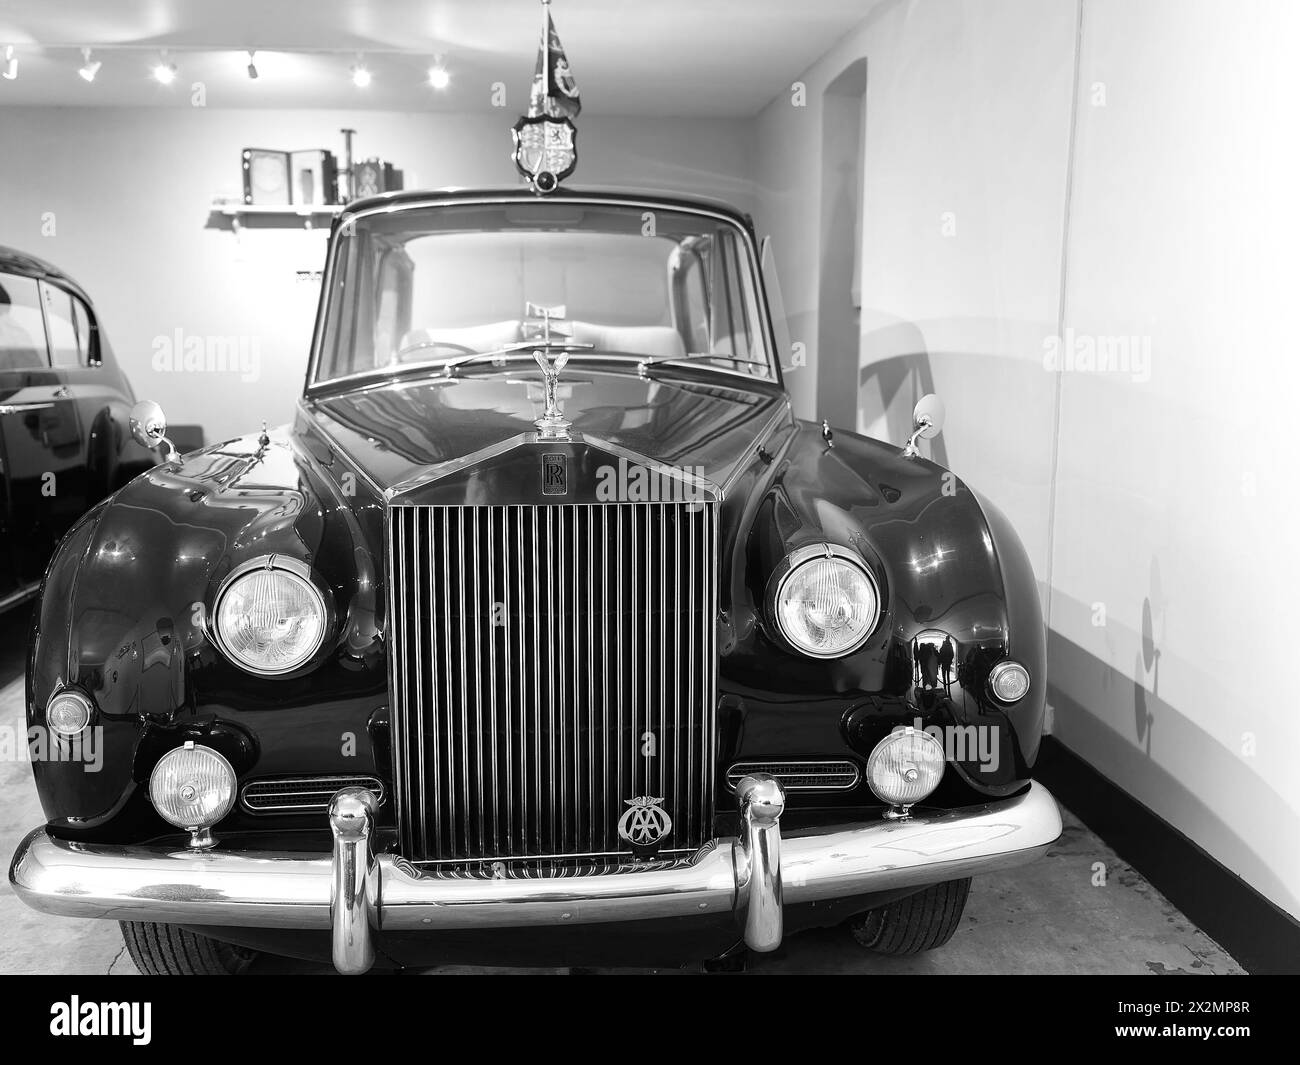 Rolls Royce Phantom Car, 1961 bis 2002 von Königin Elizabeth II. Benutzt, in einer Garage in der Landresidenz des britischen Monarchen Sandringham House. Stockfoto